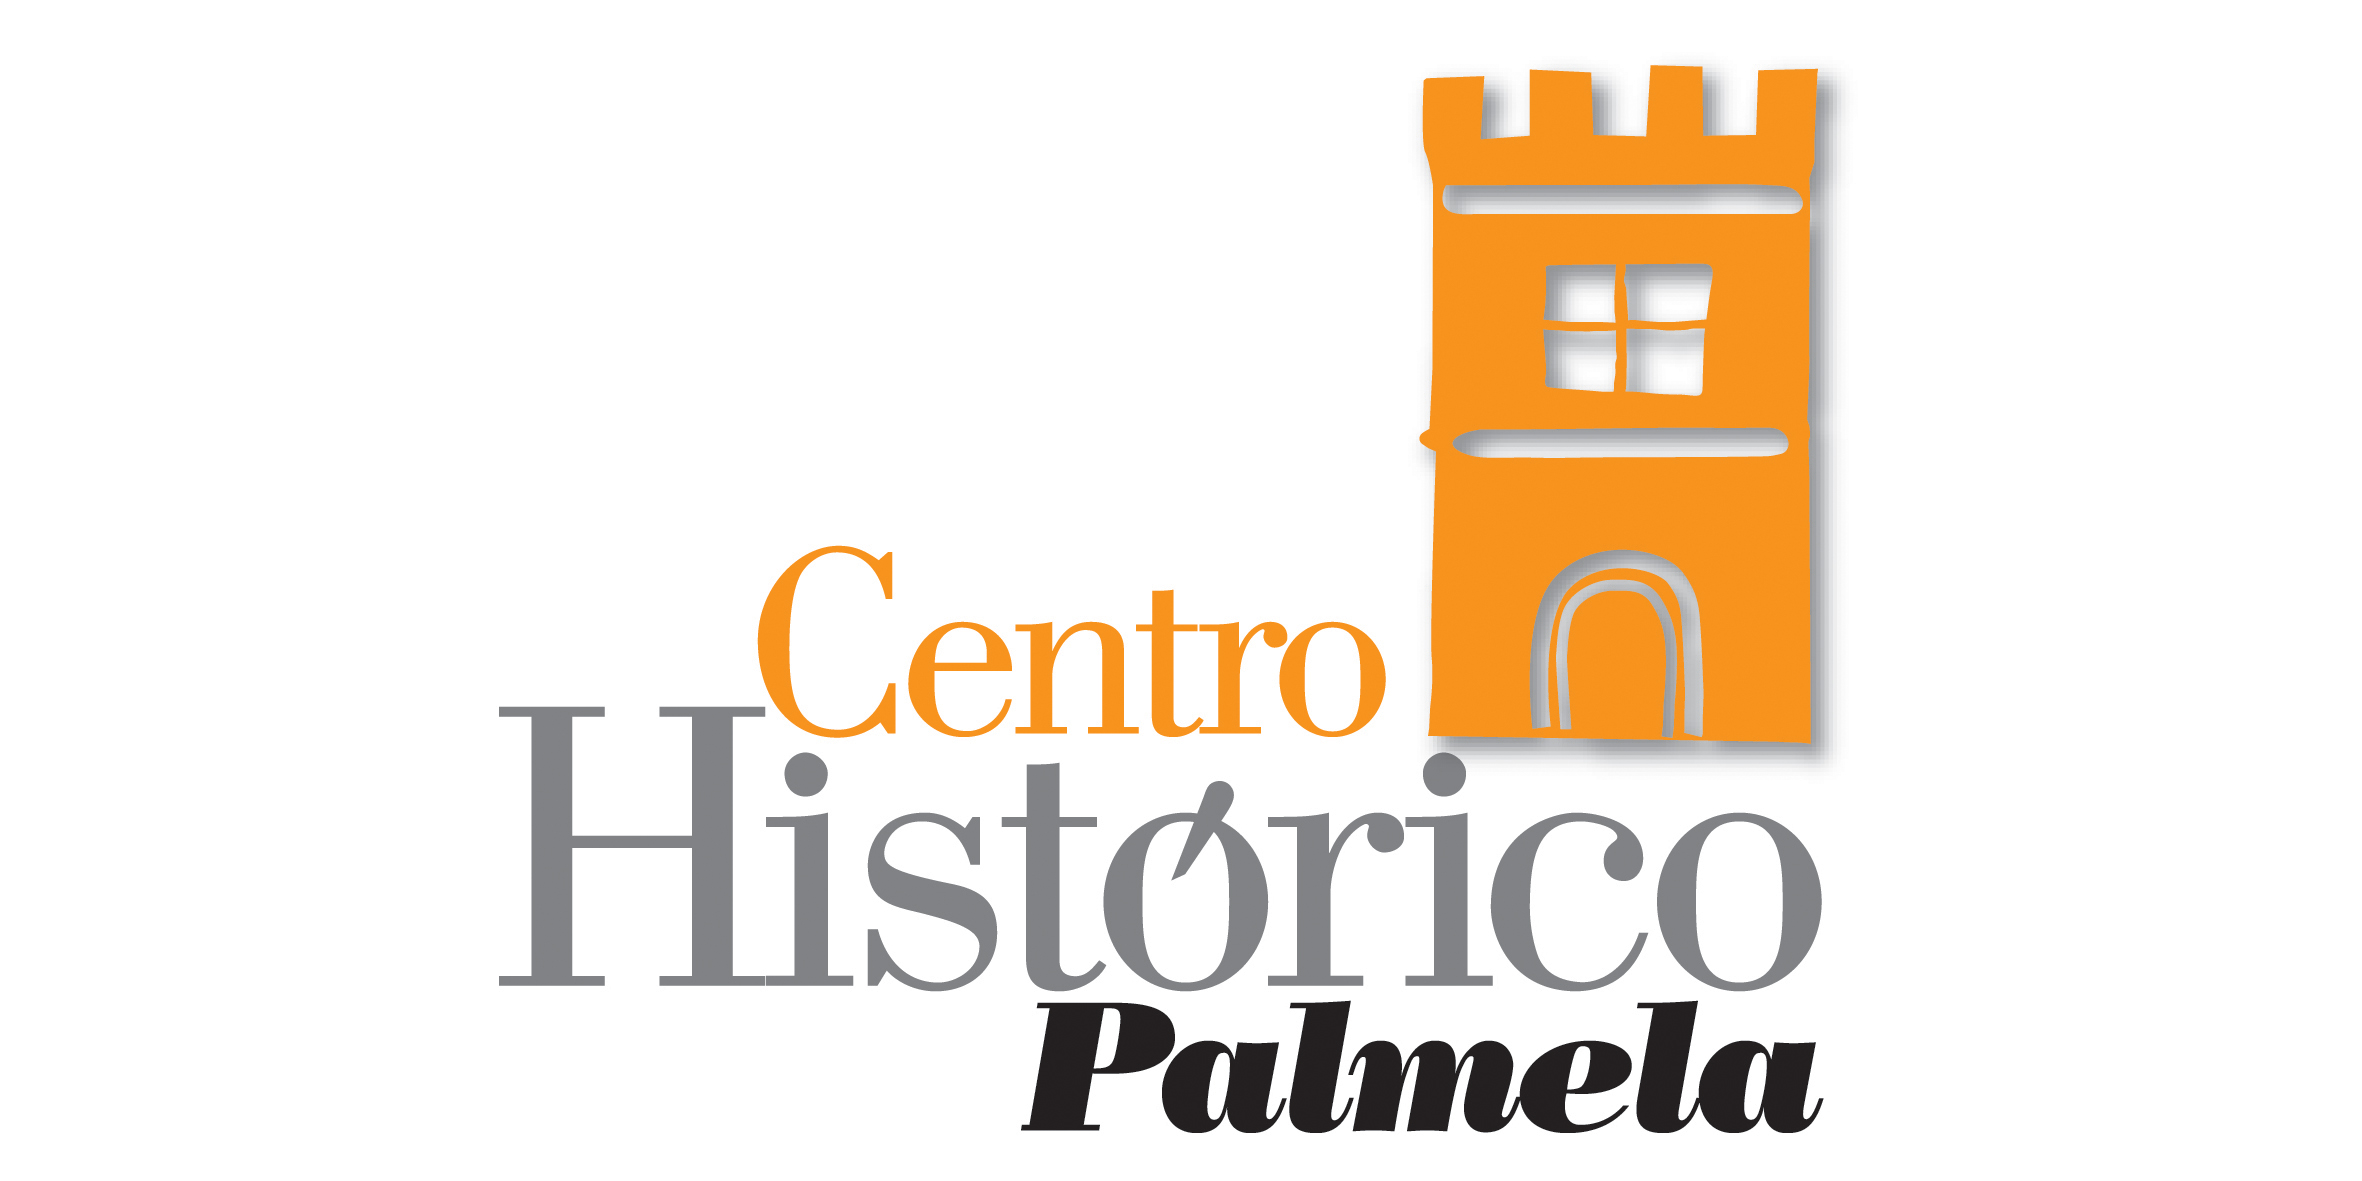 Município desafia comunidade para a construção do “Álbum de Família” do Centro Histórico de Palmela